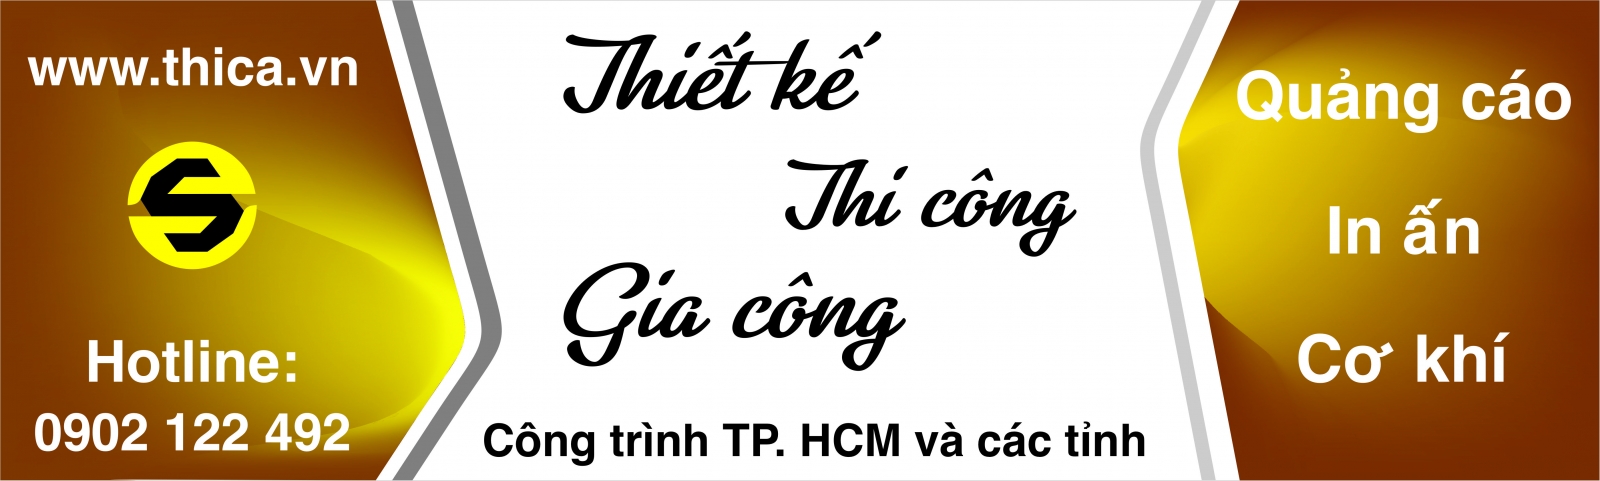 thiết kế bảng hiệu www.thica.vn